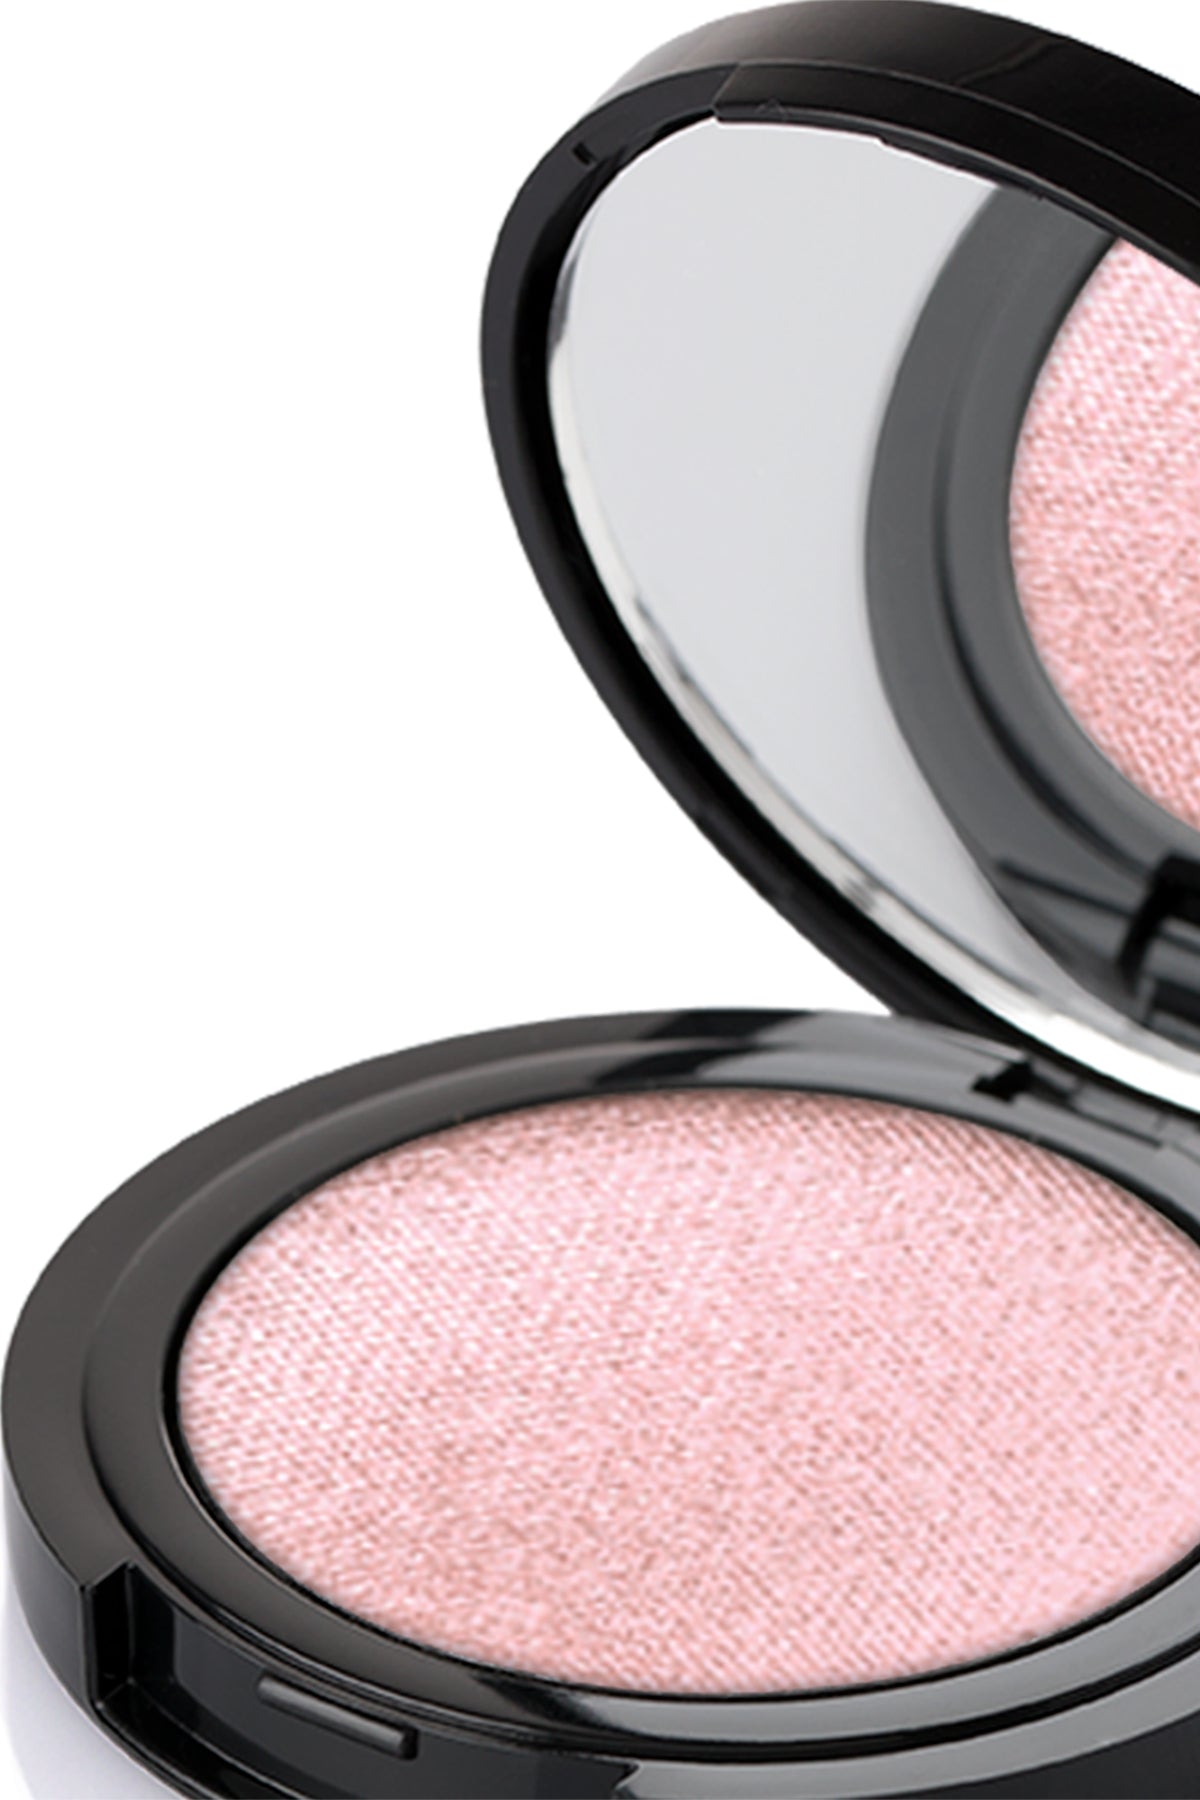 Pierre Cardin Pearly Velvet Eyeshadow Peachy Pink 675 - 4,0 gr